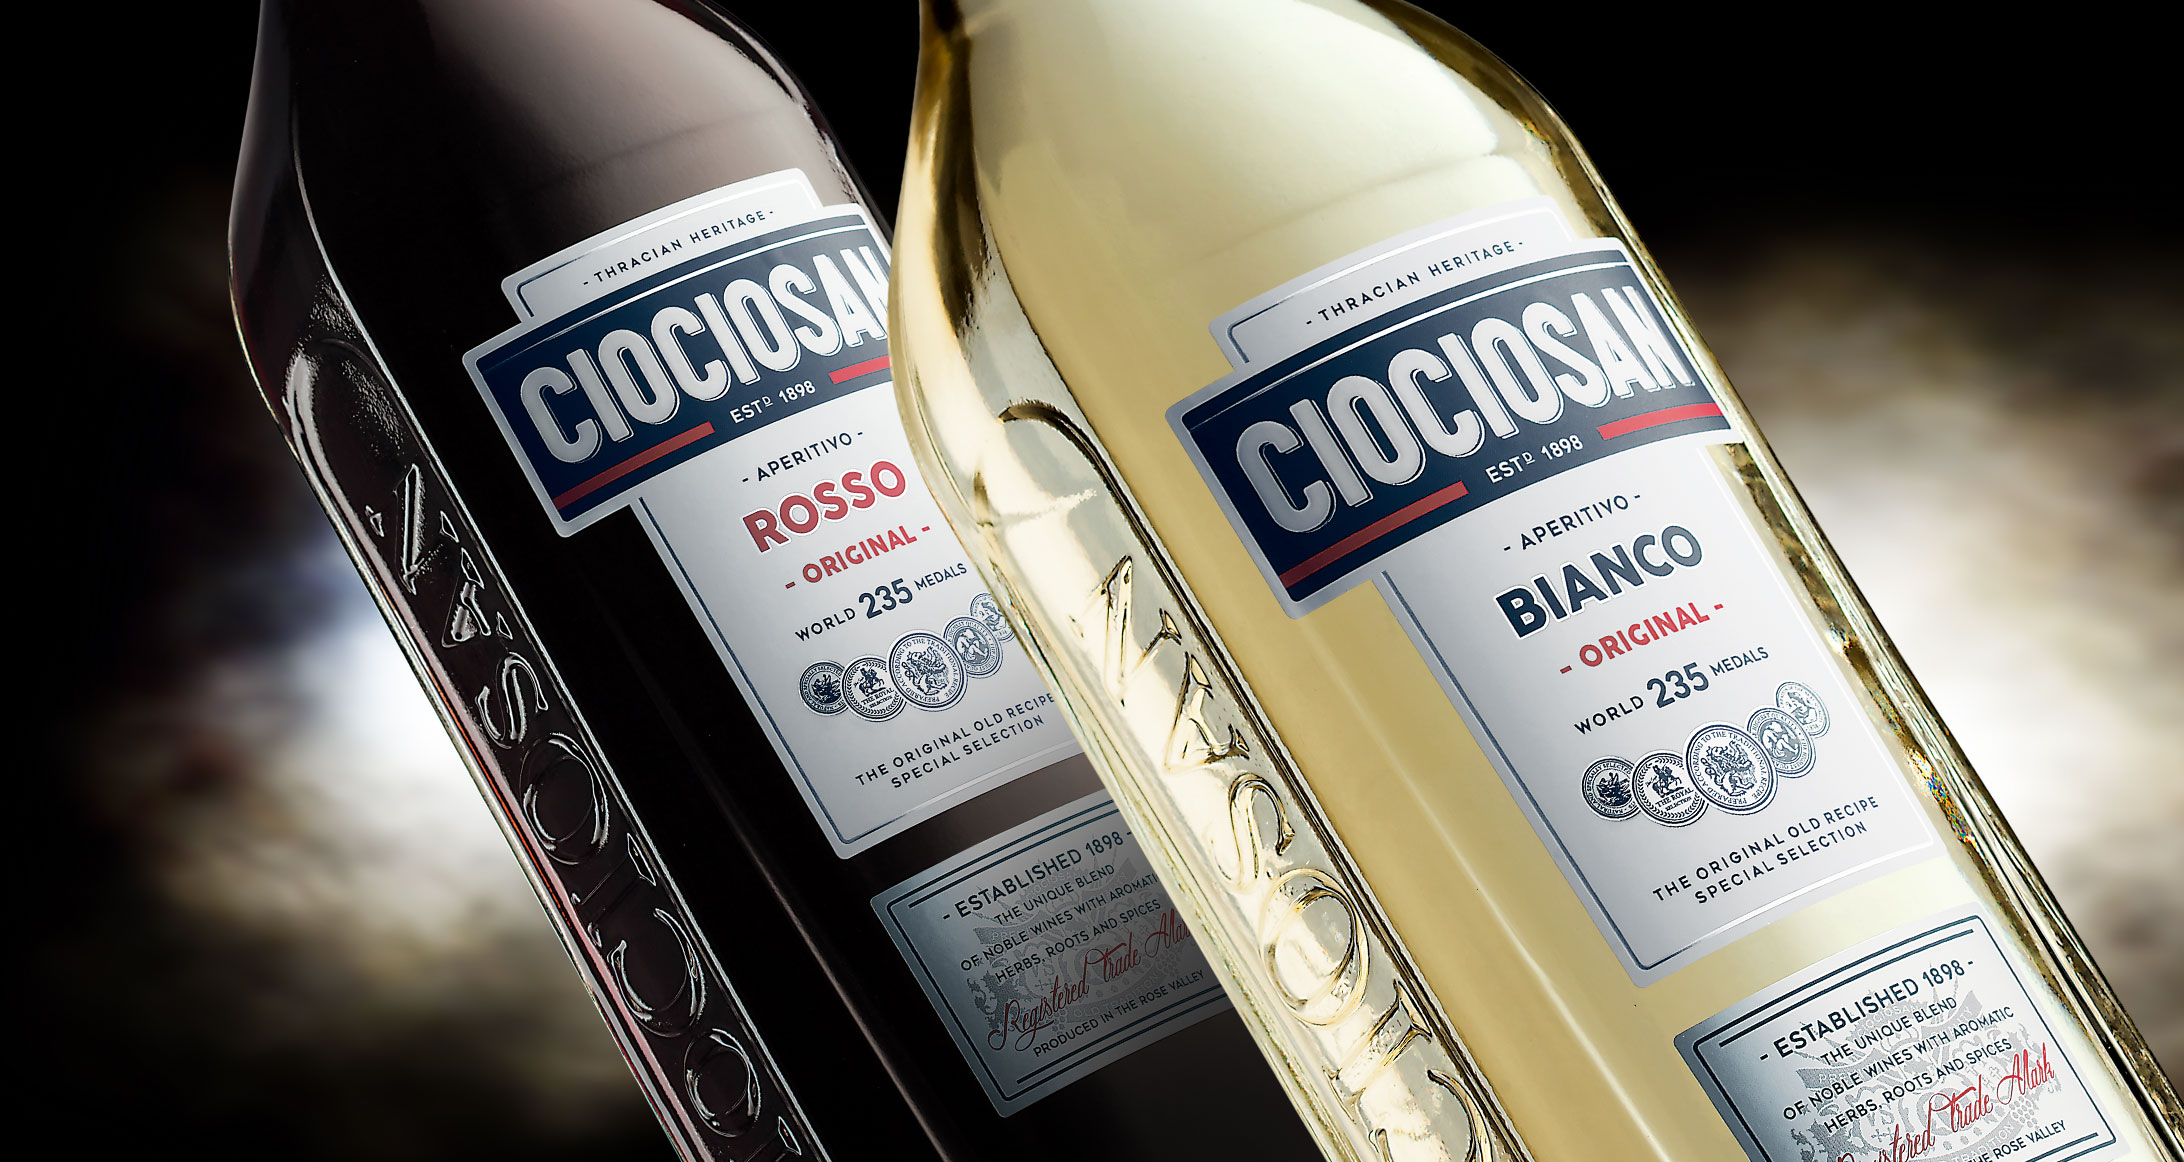 ciociosan aperitivo vermouth packaging facelift